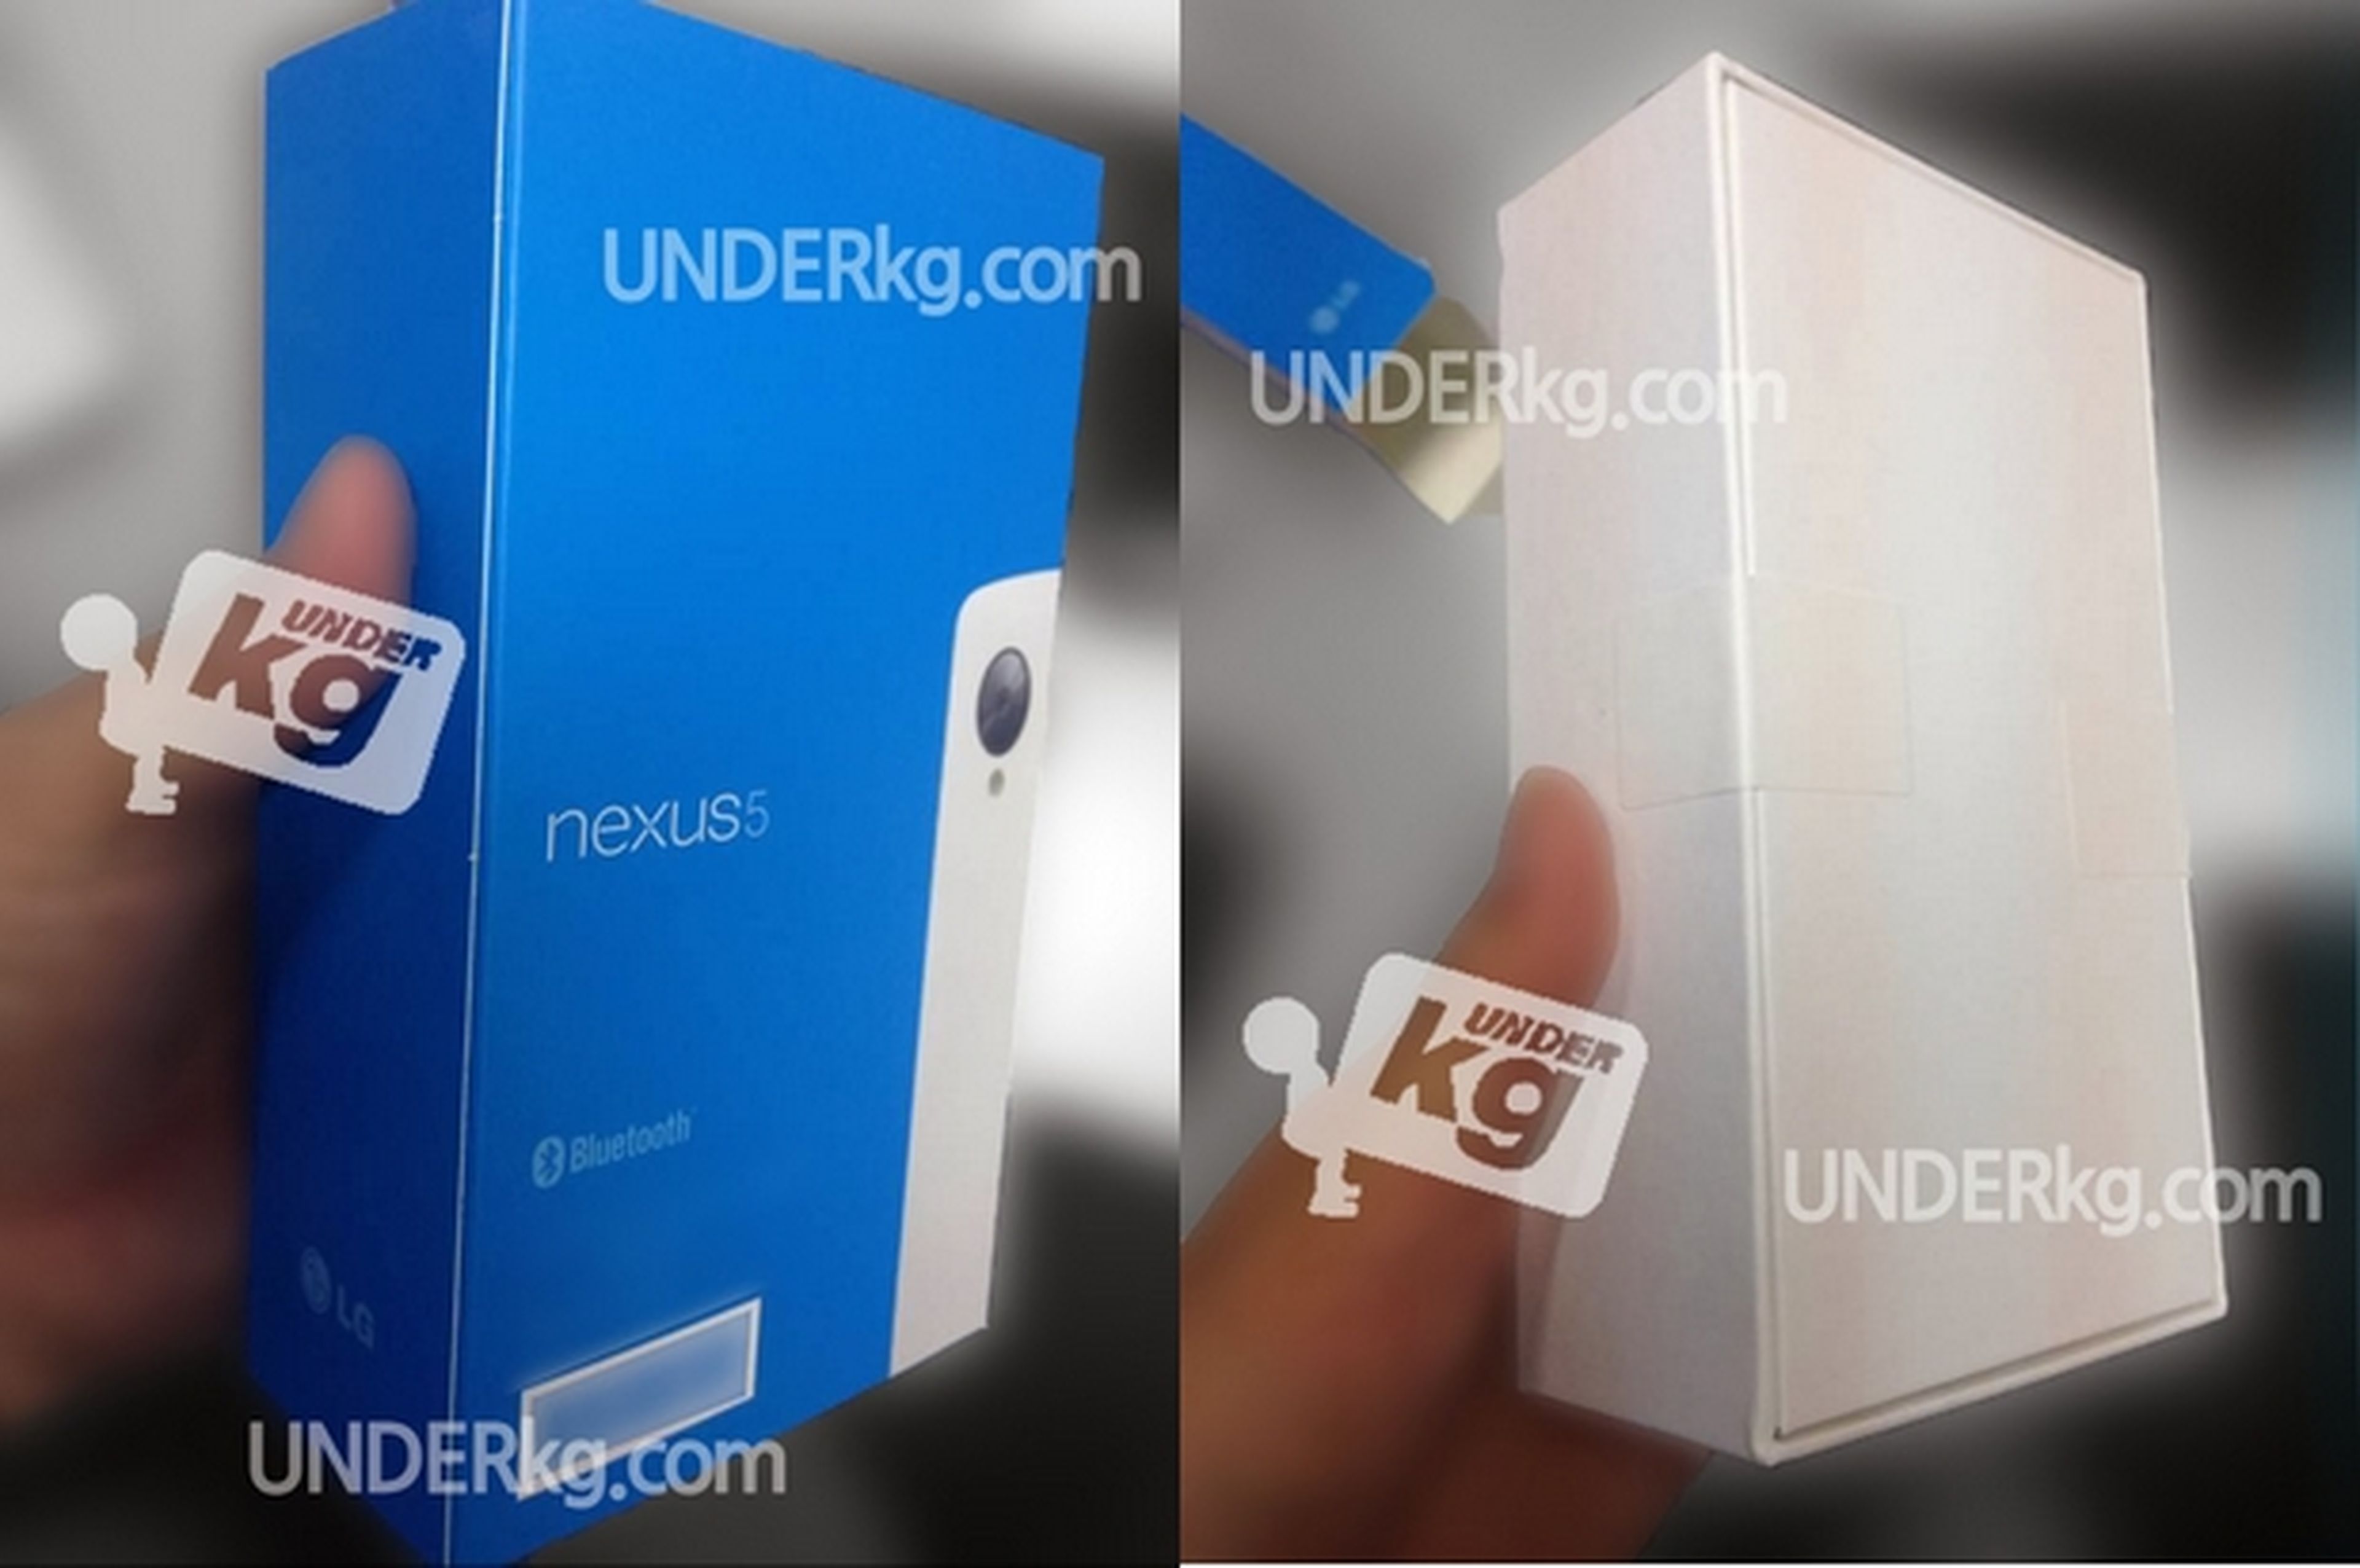 Se filtra la caja y el embalaje del smartphone Nexus 5 blanco